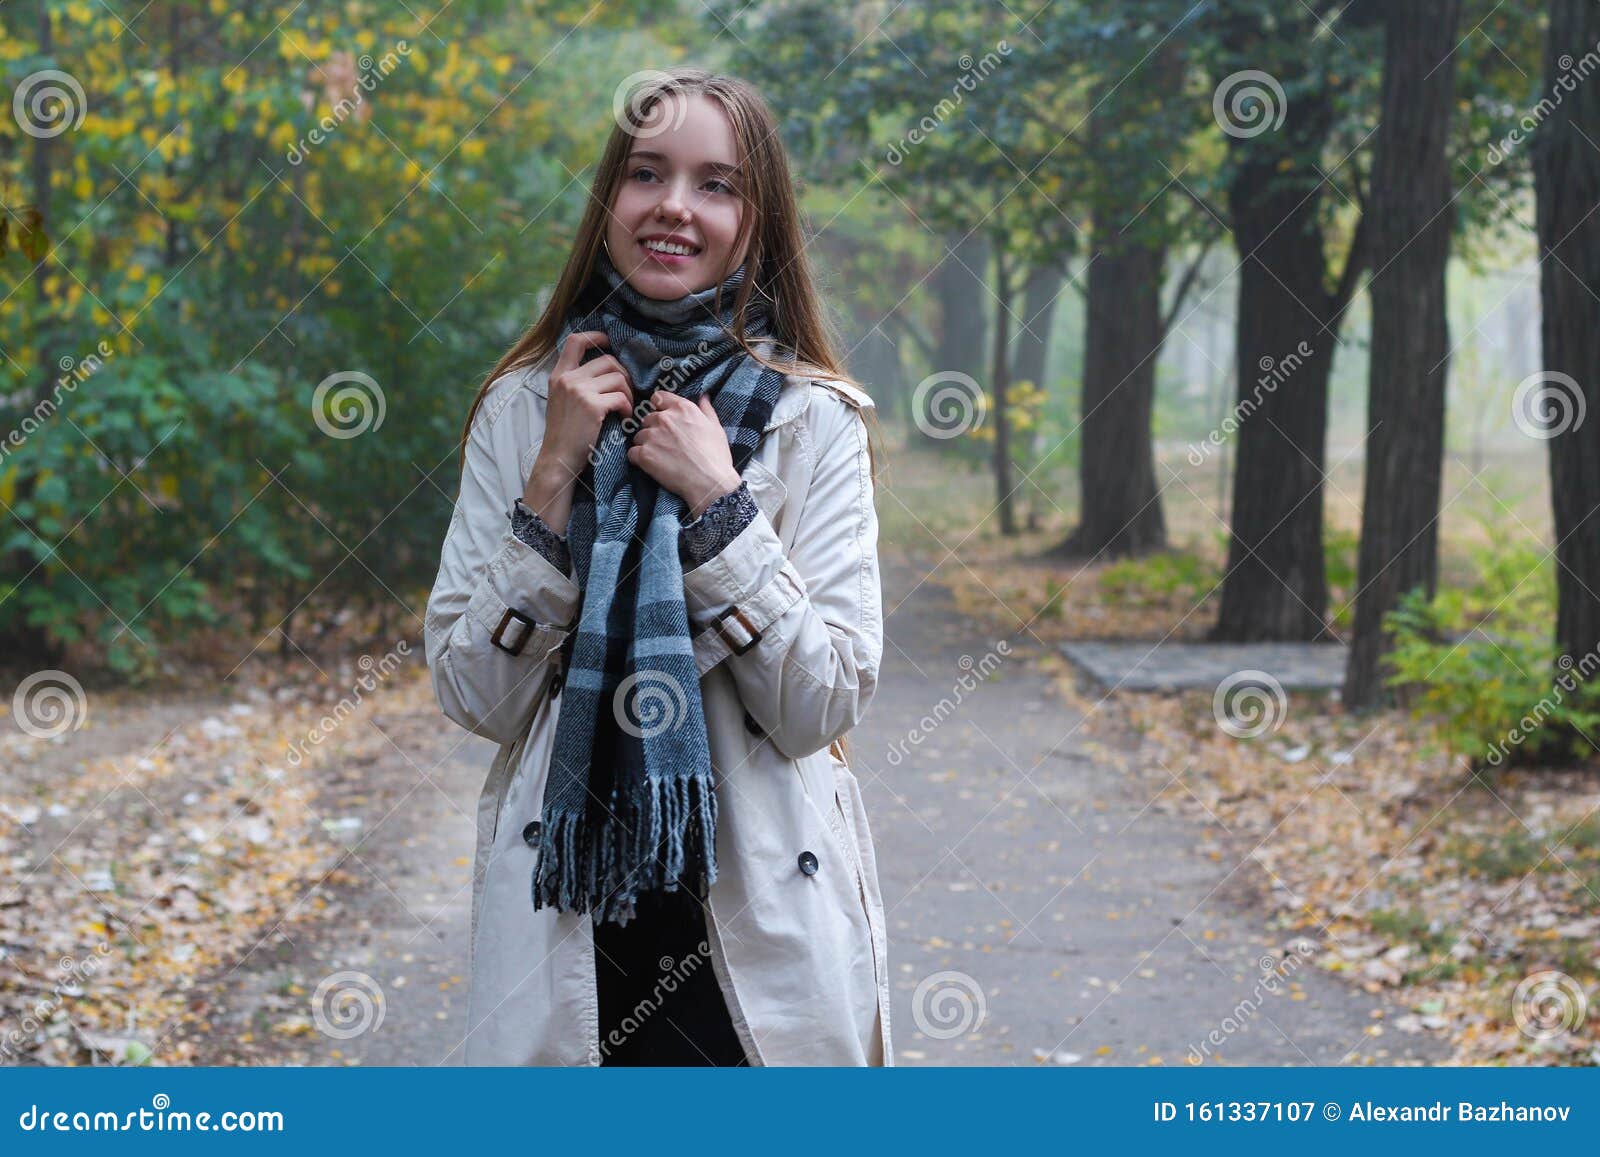 Meisje in Een Trench Jas En in Sjaal Stock Afbeelding - Image of ...